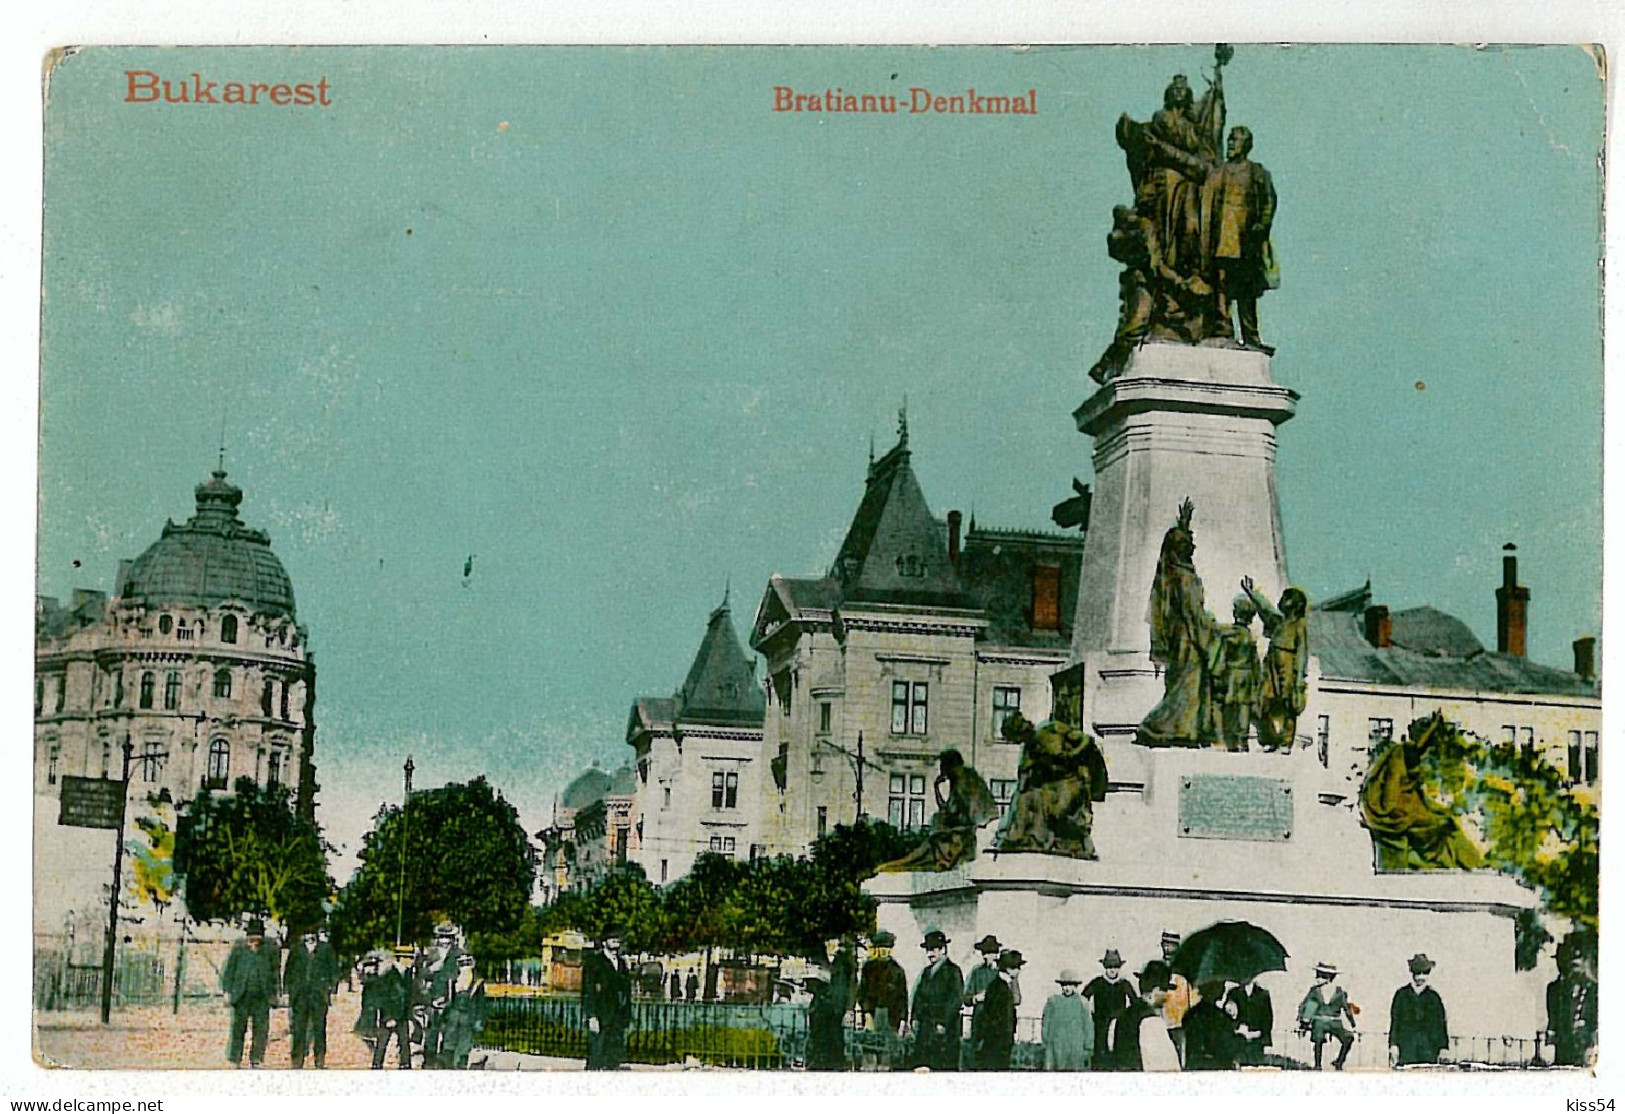 RO 40 - 1375 BUCURESTI, Bratianu Statue, Romania - Old Postcard - Used - 1917 - Romania